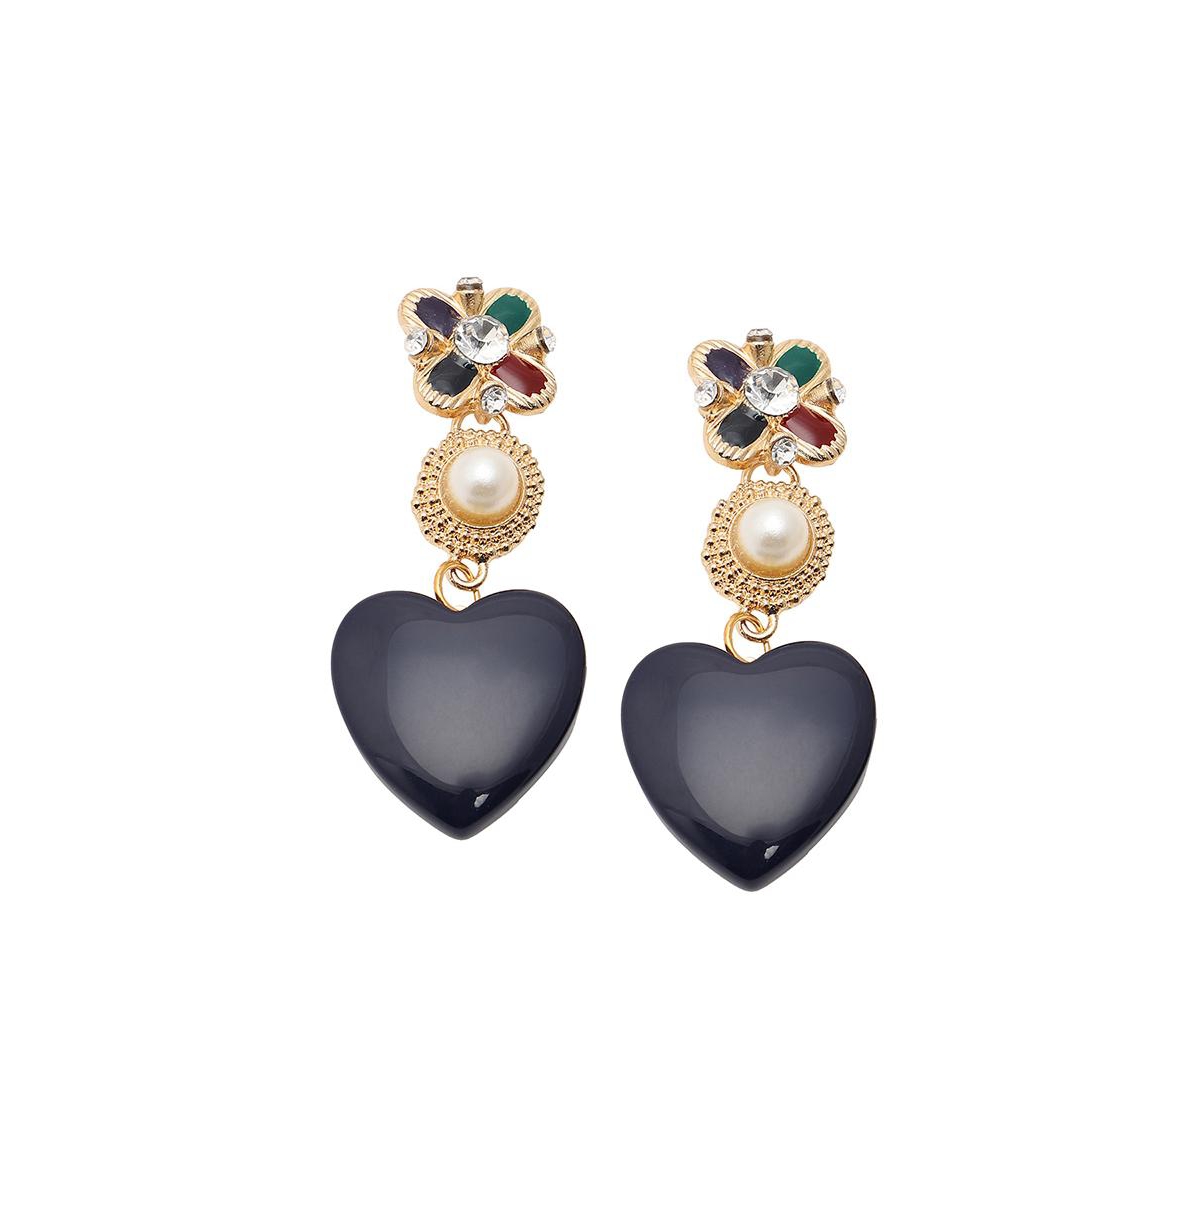 Sohi Women's Royal Heart Drop Earrings In Black